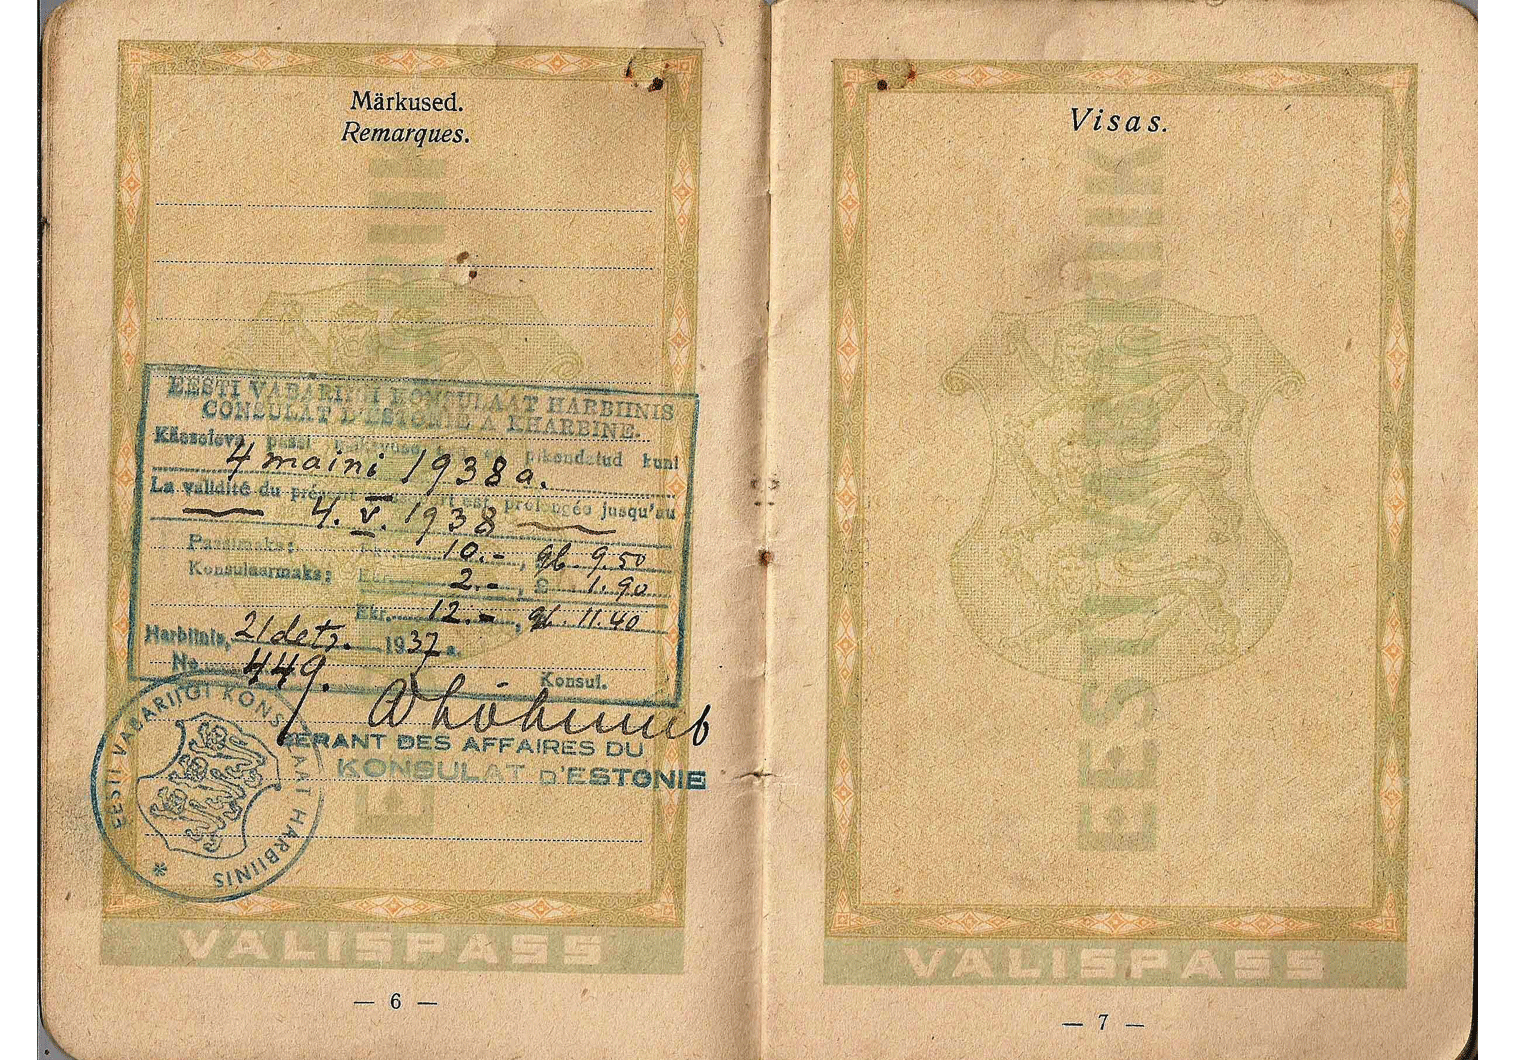 Manchurian visa